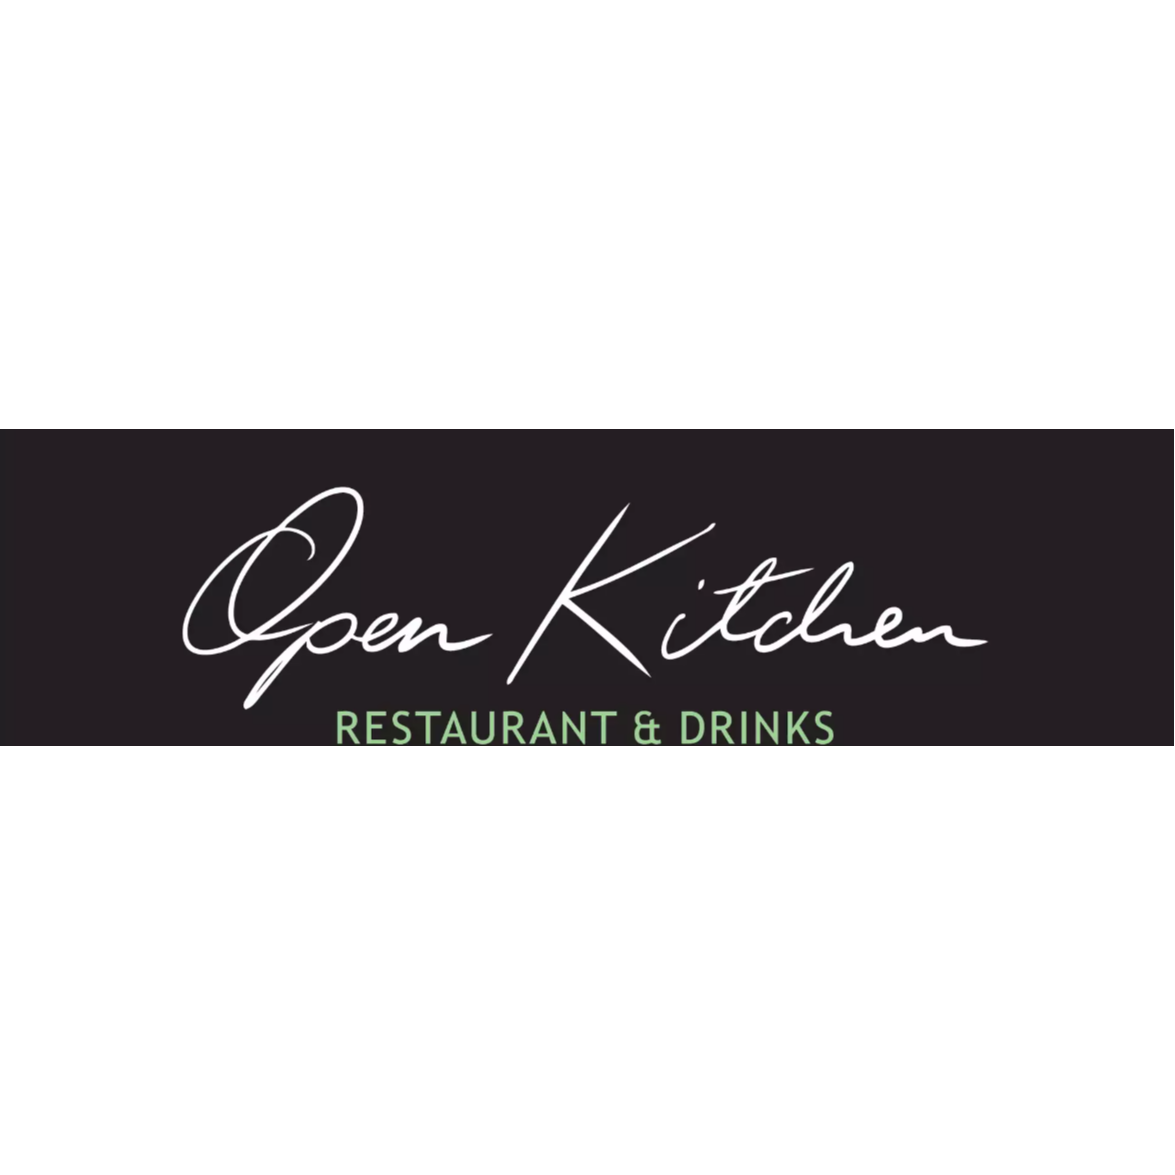 Open Kitchen Restaurant & Drinks in Hamburg - Logo